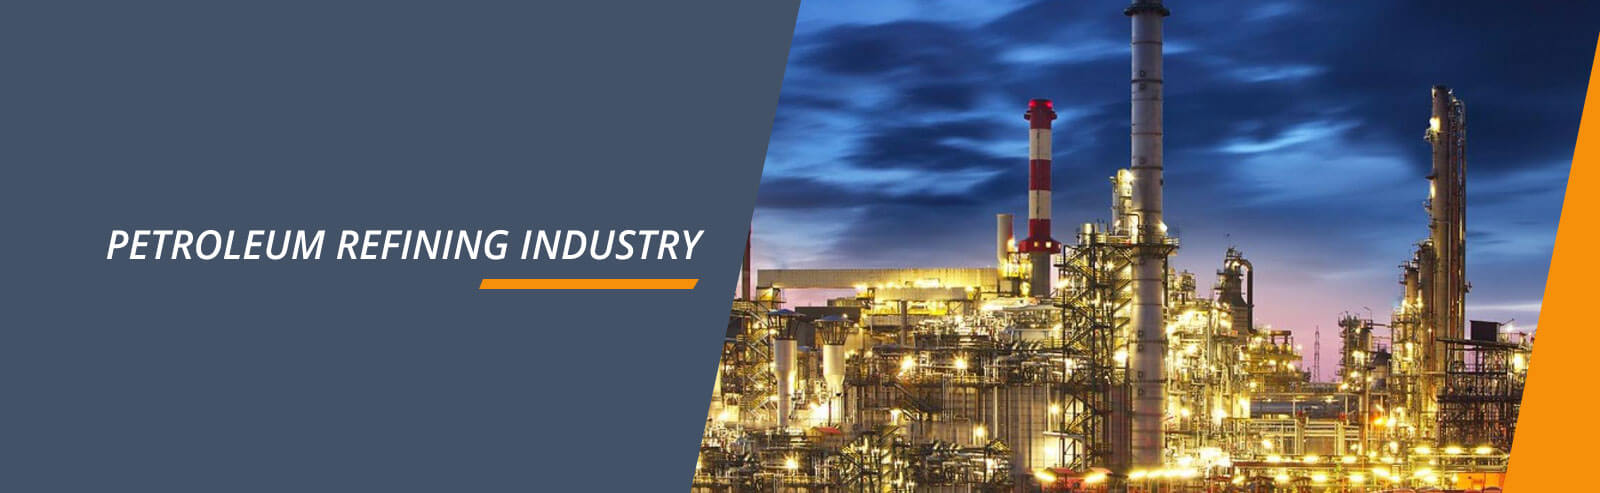 Oilseals-Petroleum Refining Industry